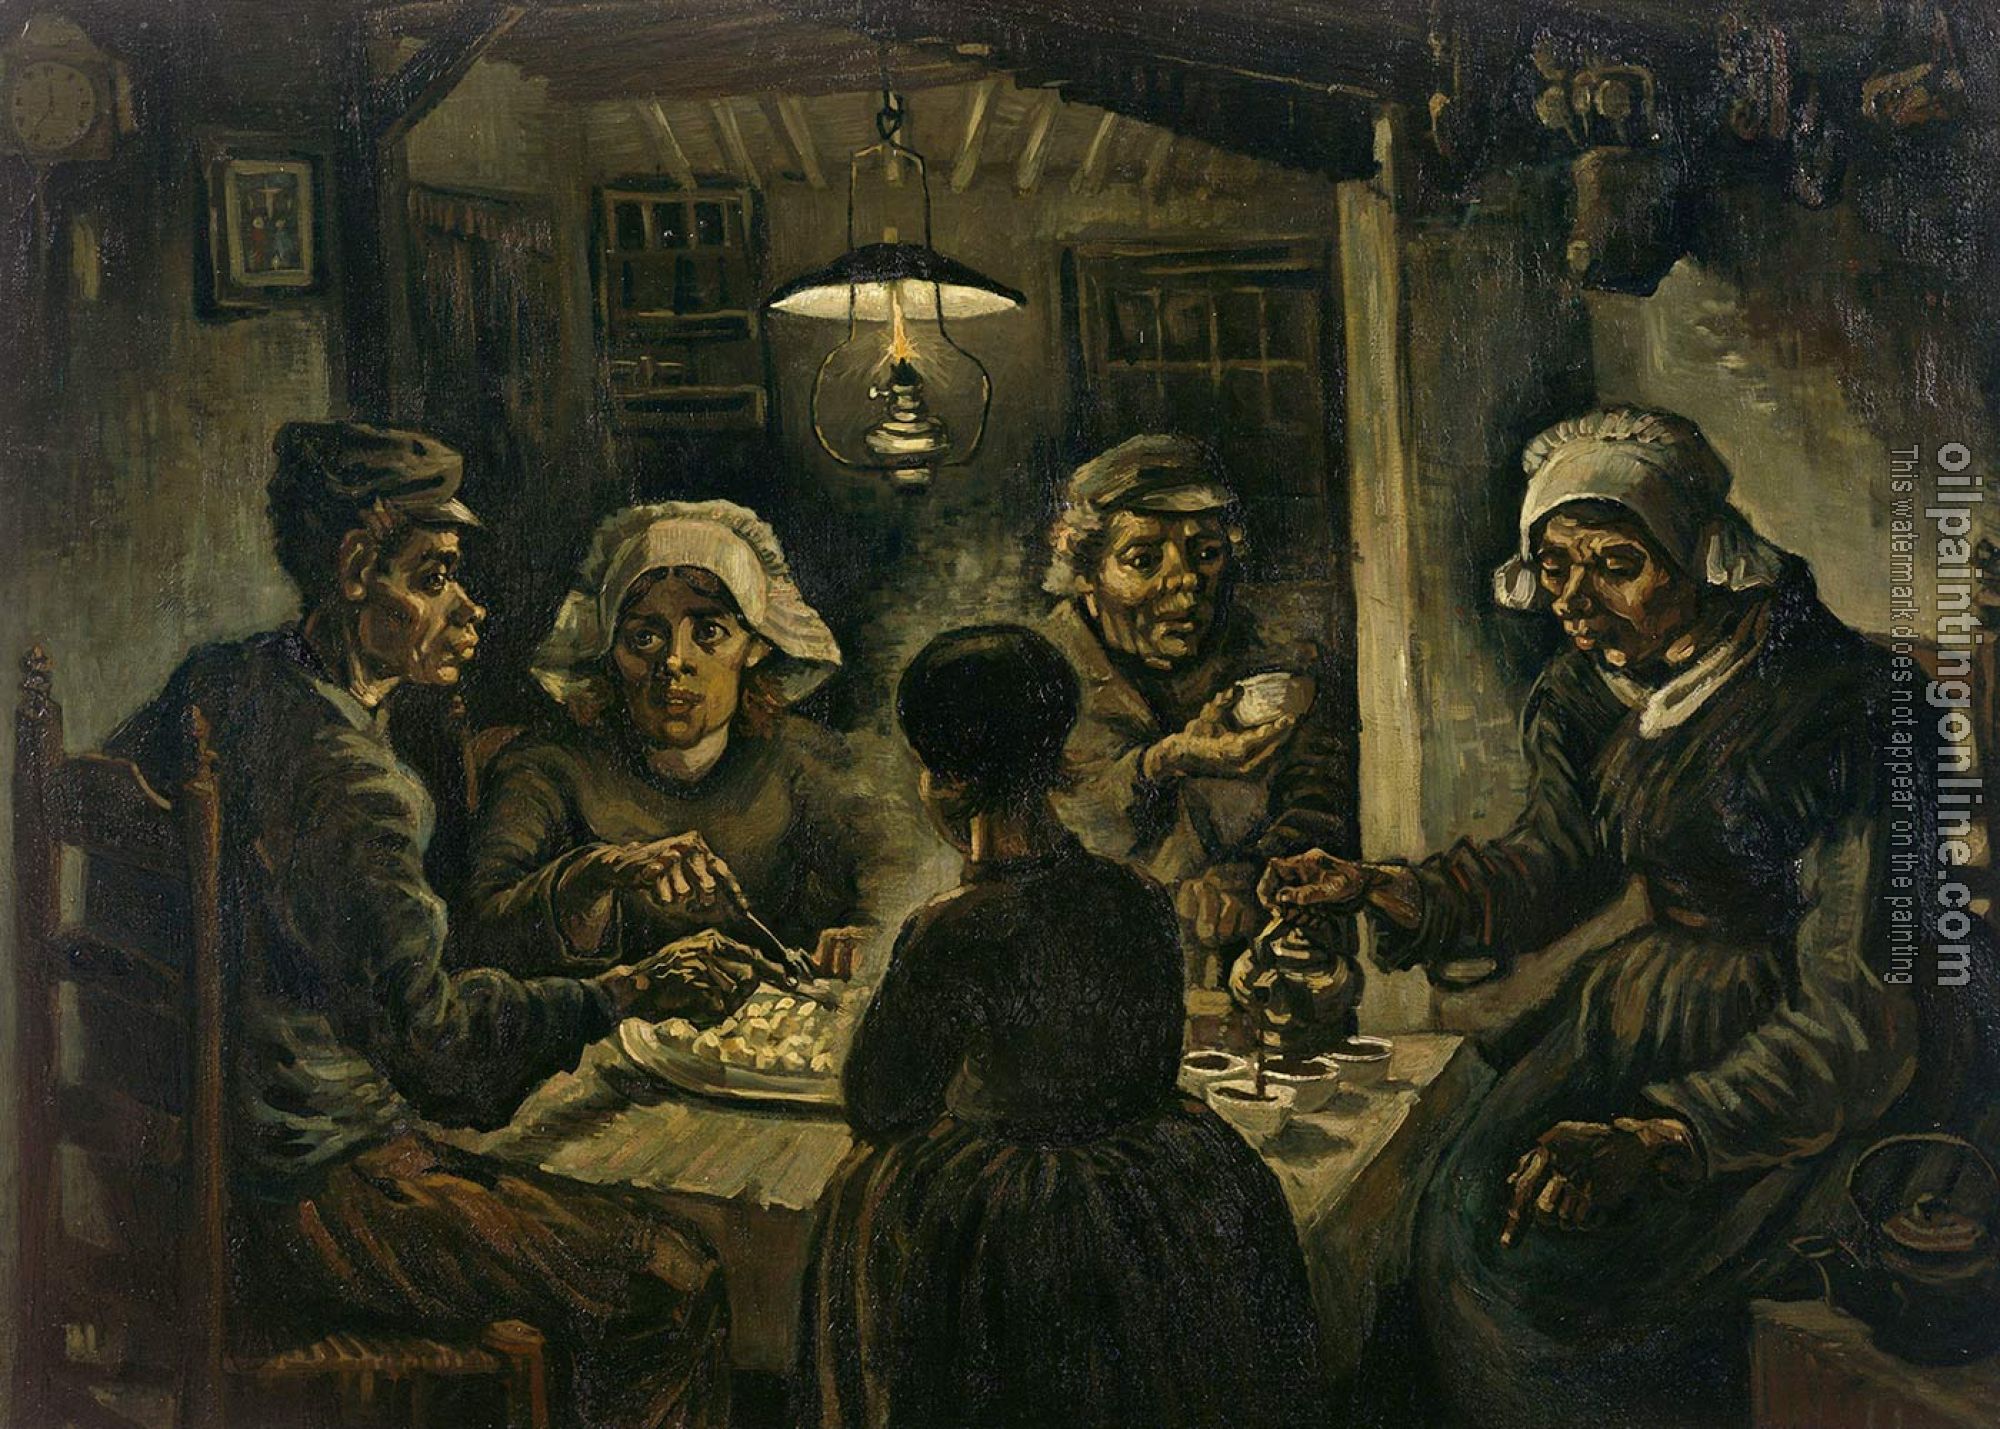 Gogh, Vincent van - The potato eaters